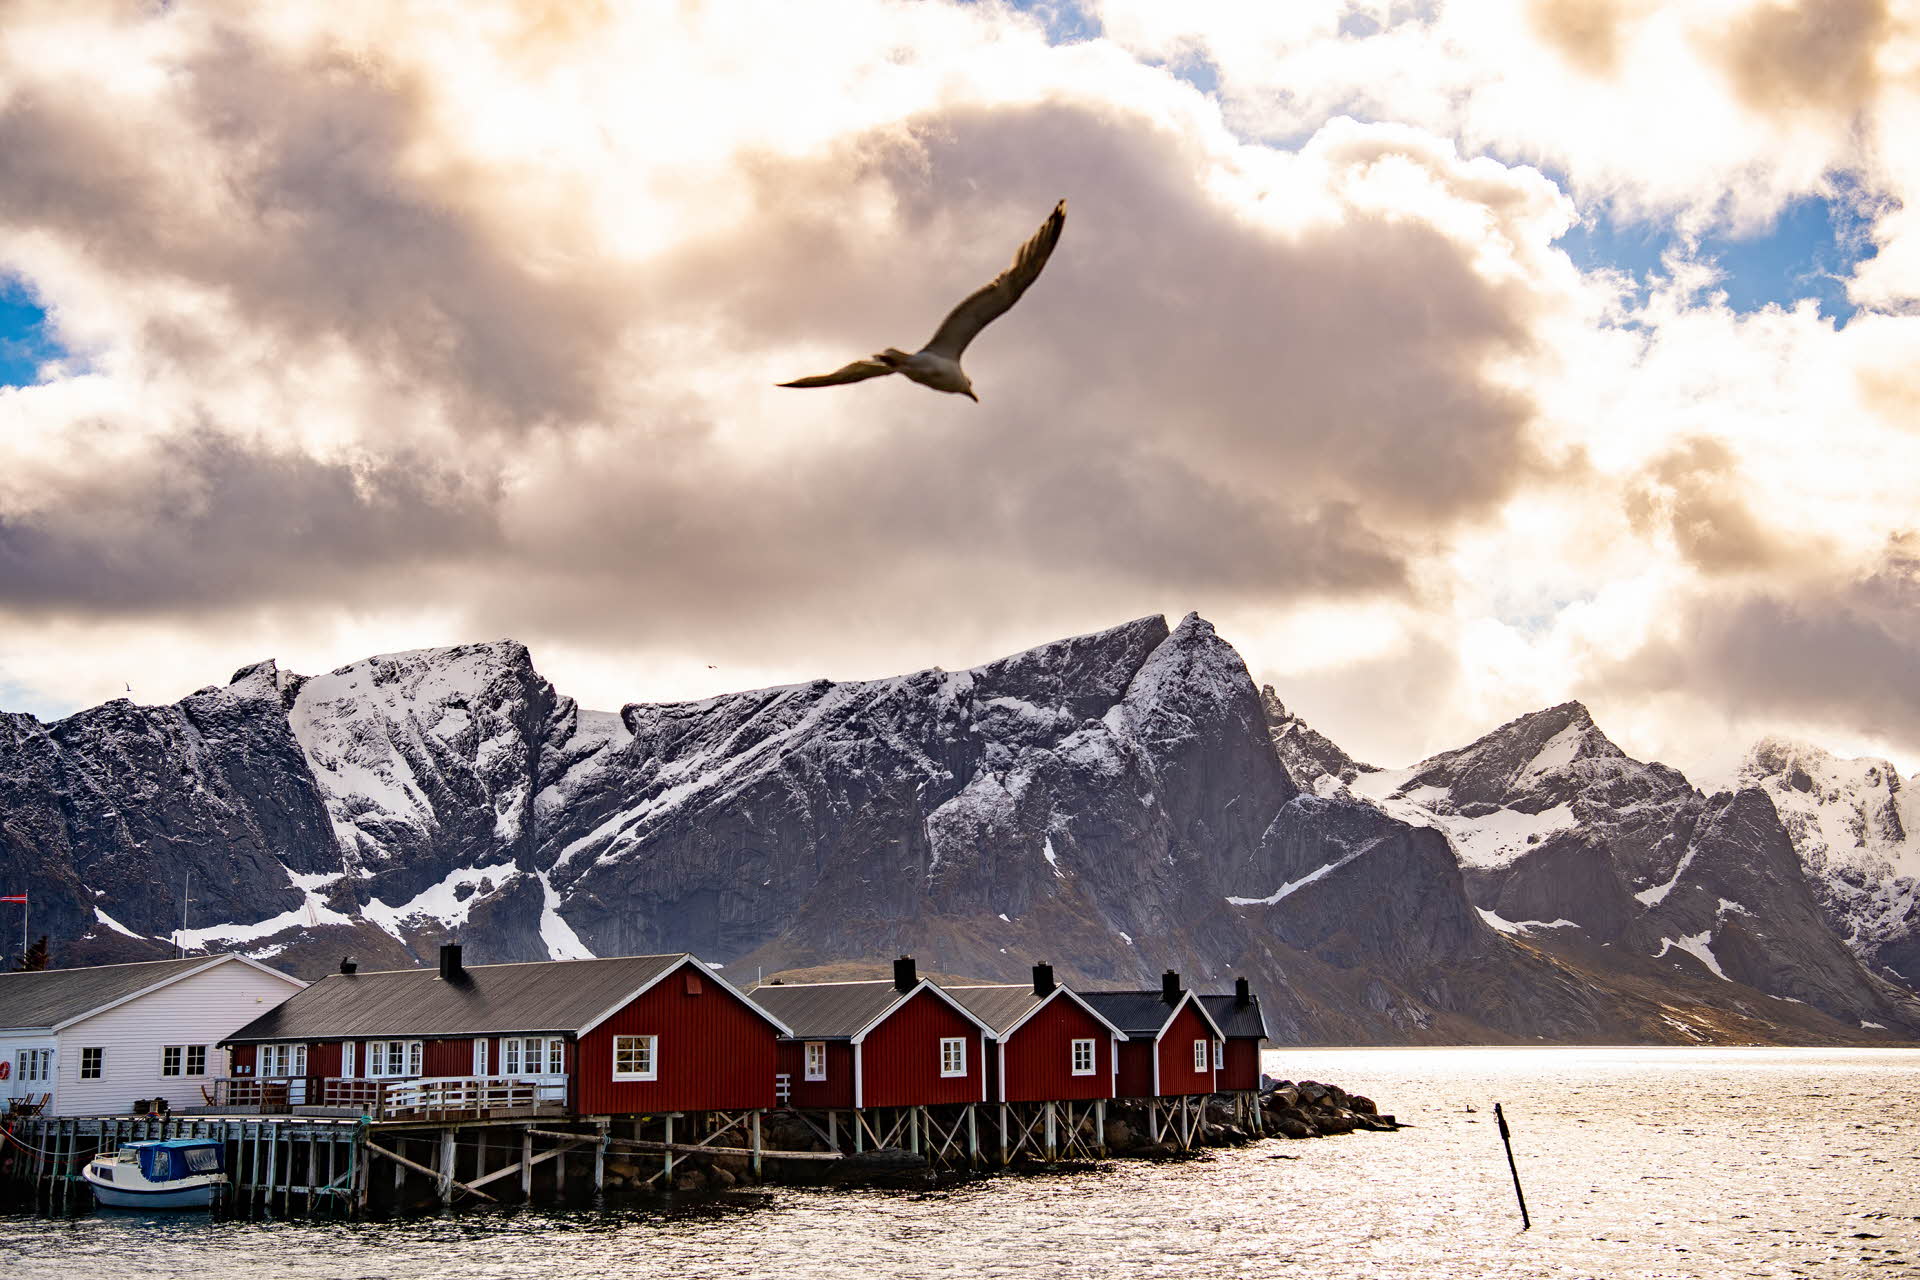 Une mouette volant au-dessus de cabanes de pêcheurs rouges, avec des montagnes à l’arrière-plan.